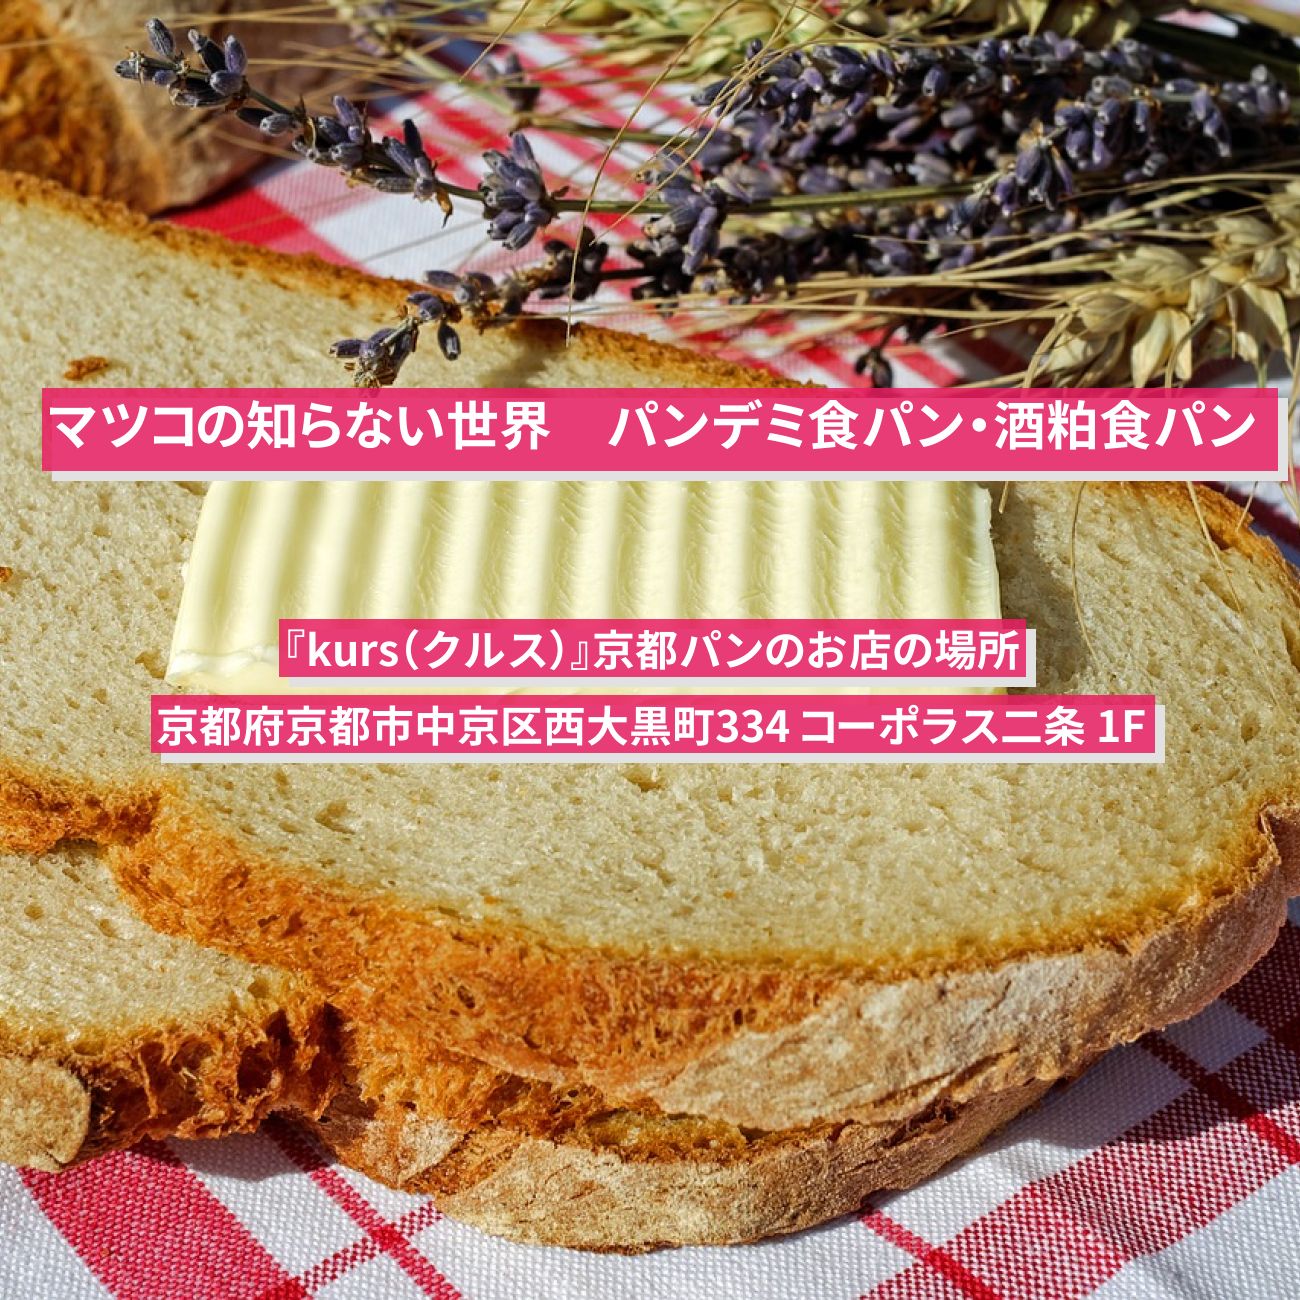 【マツコの知らない世界】パンデミ食パン・酒粕食パン『kurs（クルス）』京都パンのお店の場所